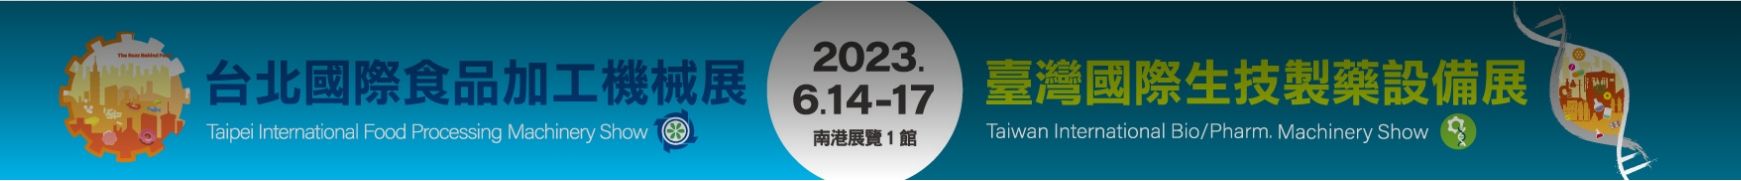 2023年台北國際食品系列展